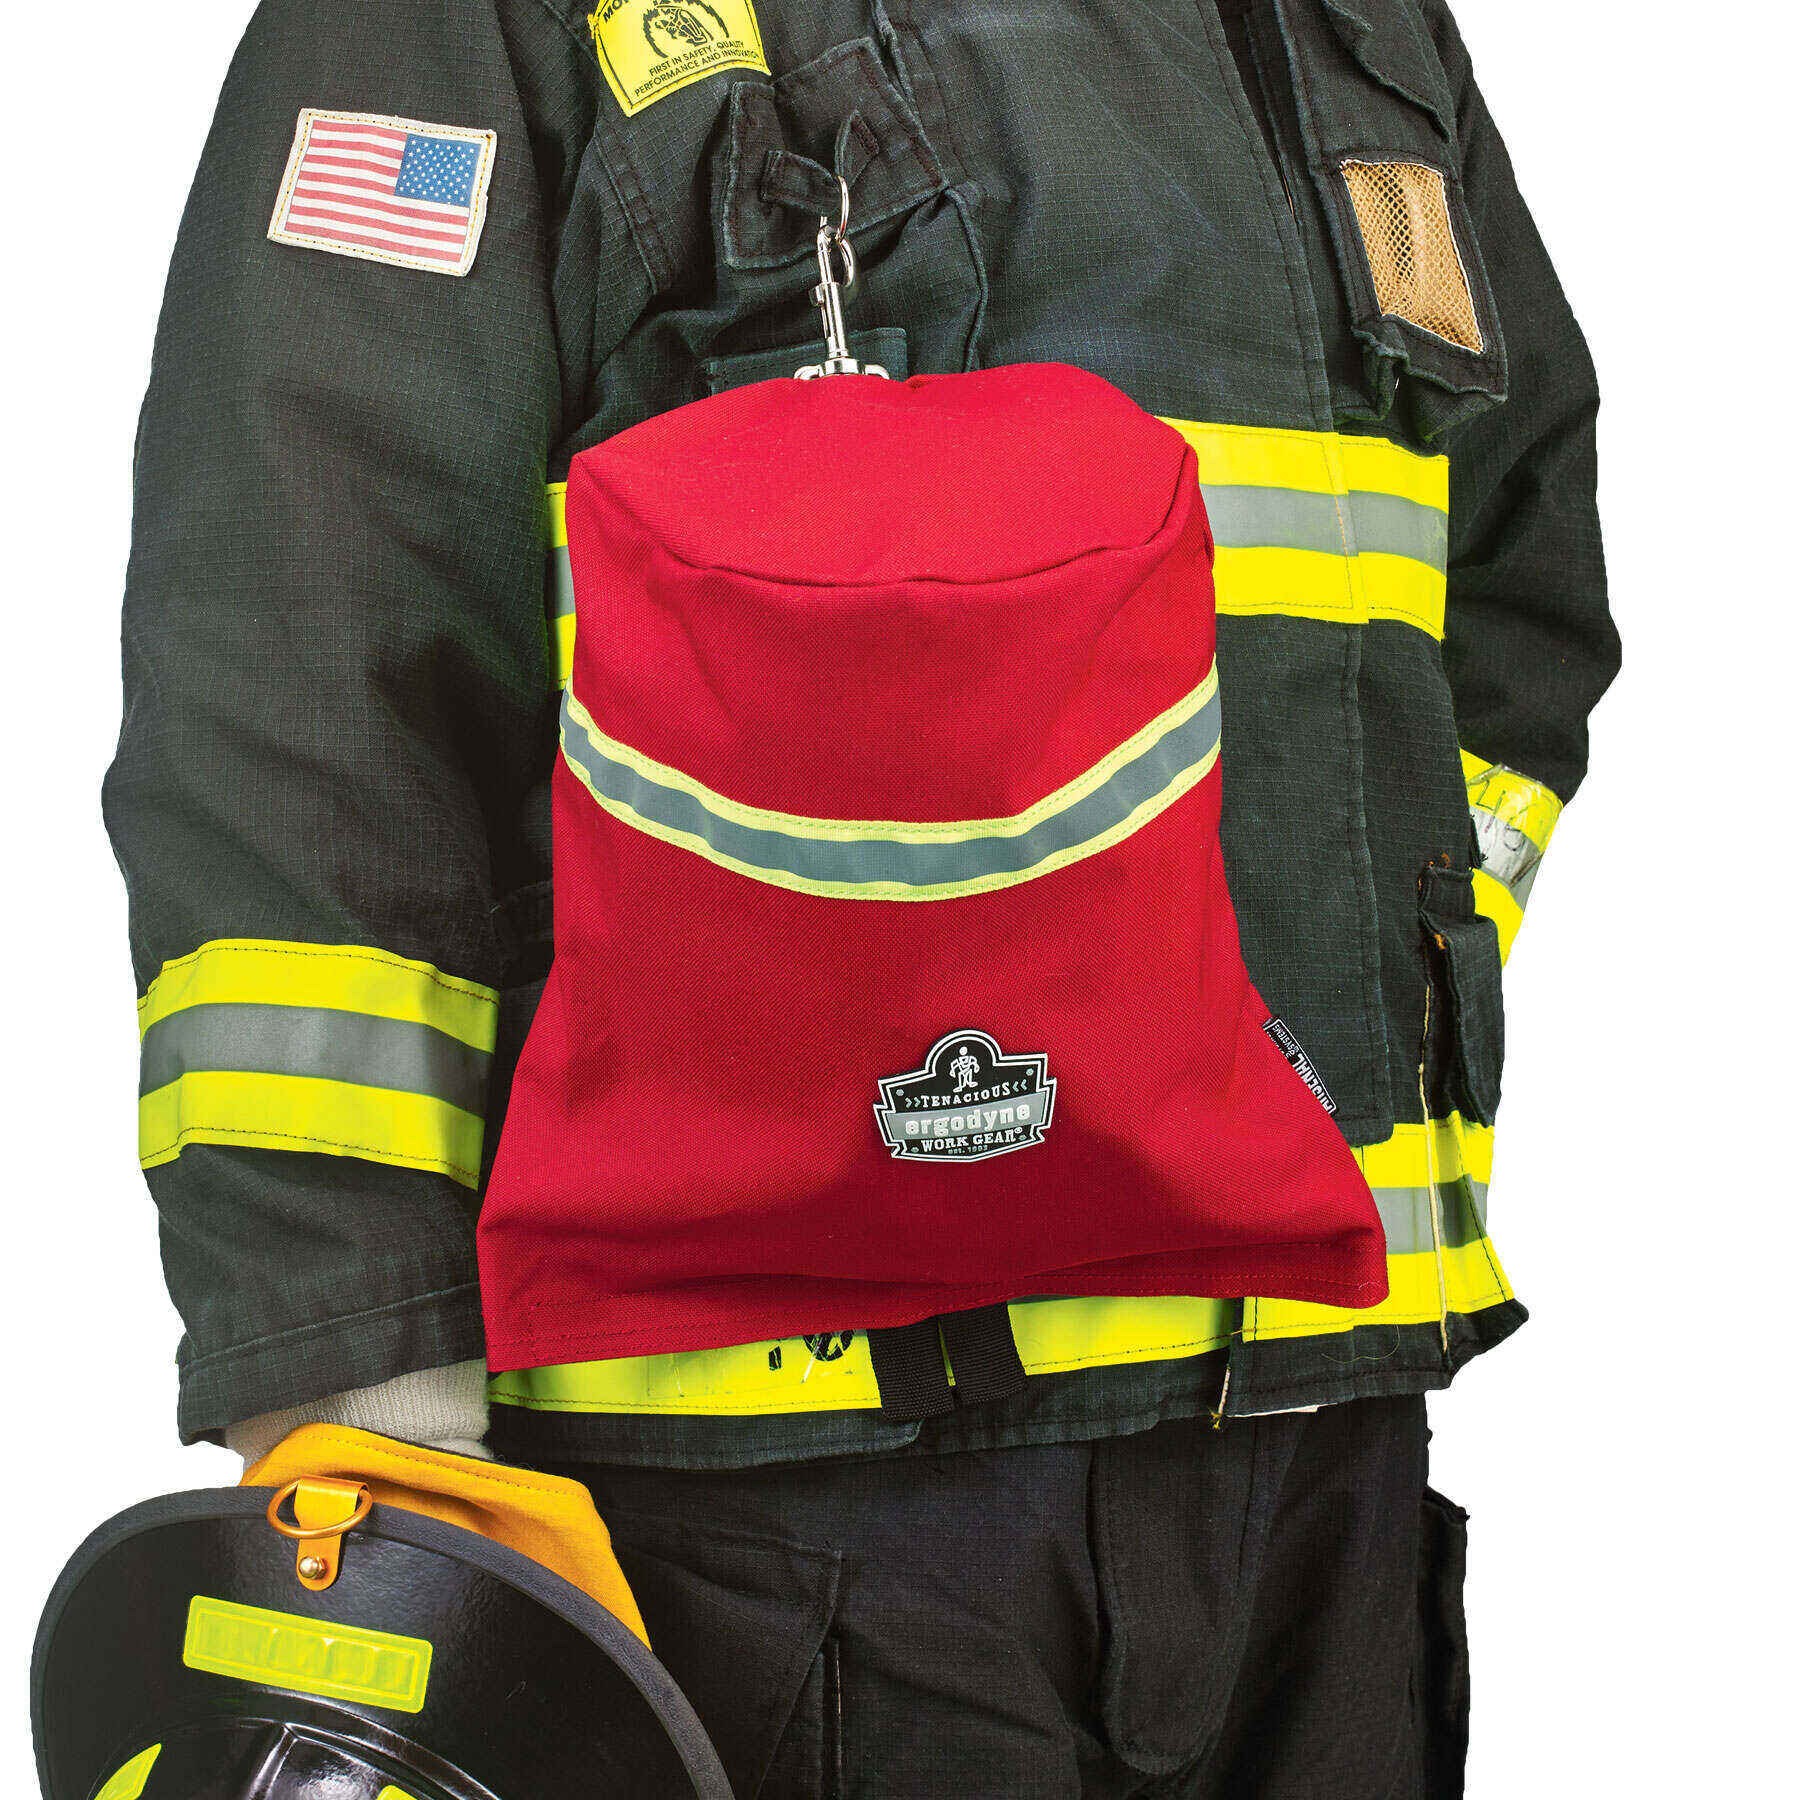 Ergodyne Arsenal 5080 Fireman's SCBA Respirator Firefighter Mask Bag fo Air Pack 